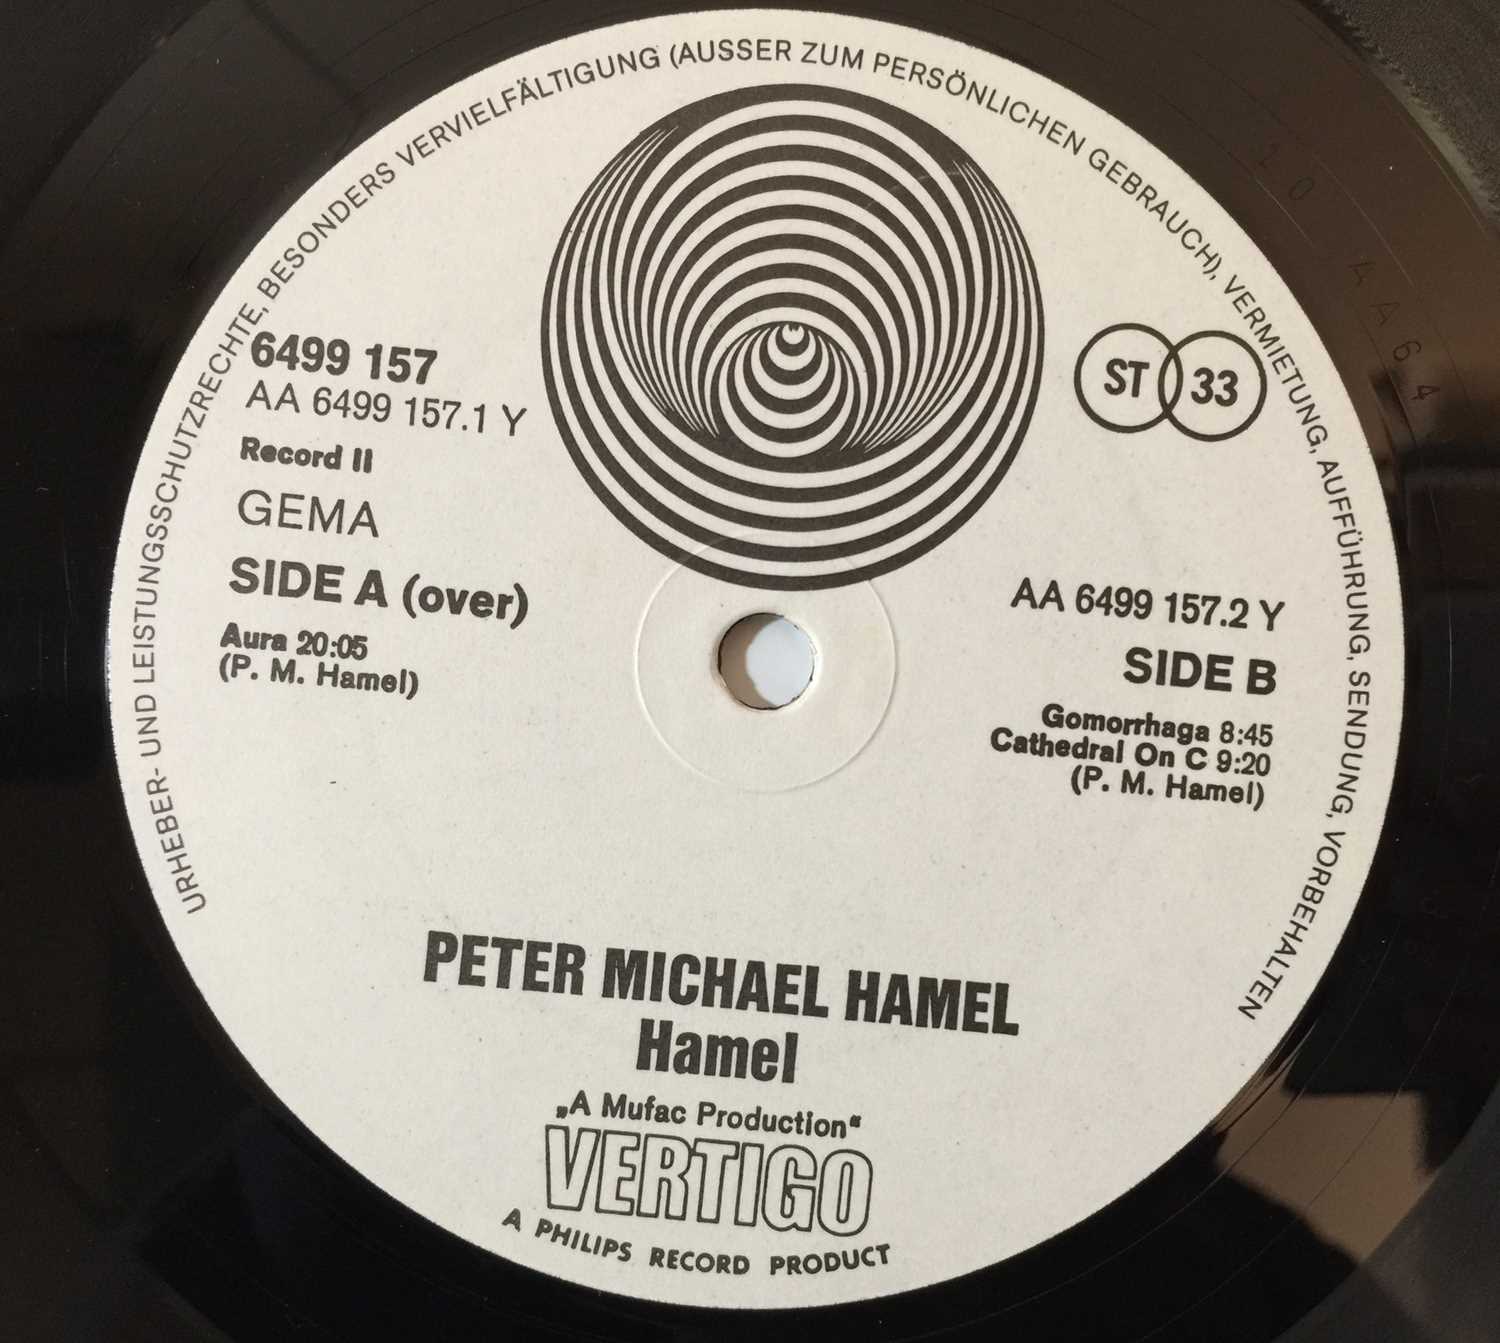 PETER MICHAEL HAMEL - HAMEL LP (6641 055) - Image 4 of 6